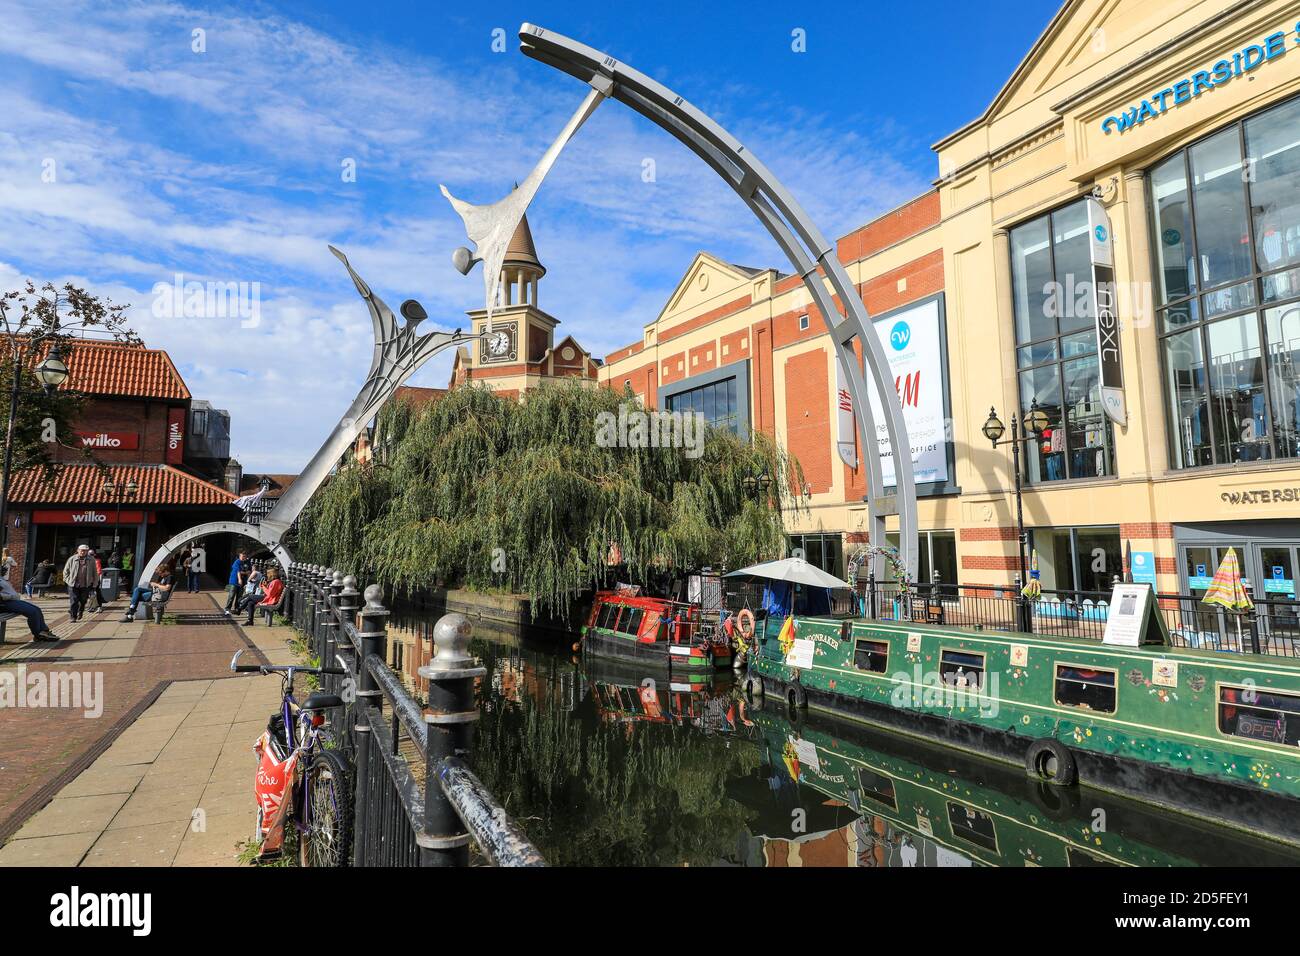 Il Waterside Shopping Center, la scultura Empowerment, e chiatte o narghairs sul fiume Witham, la città di Lincoln, Lincolnshire, Inghilterra, Regno Unito Foto Stock